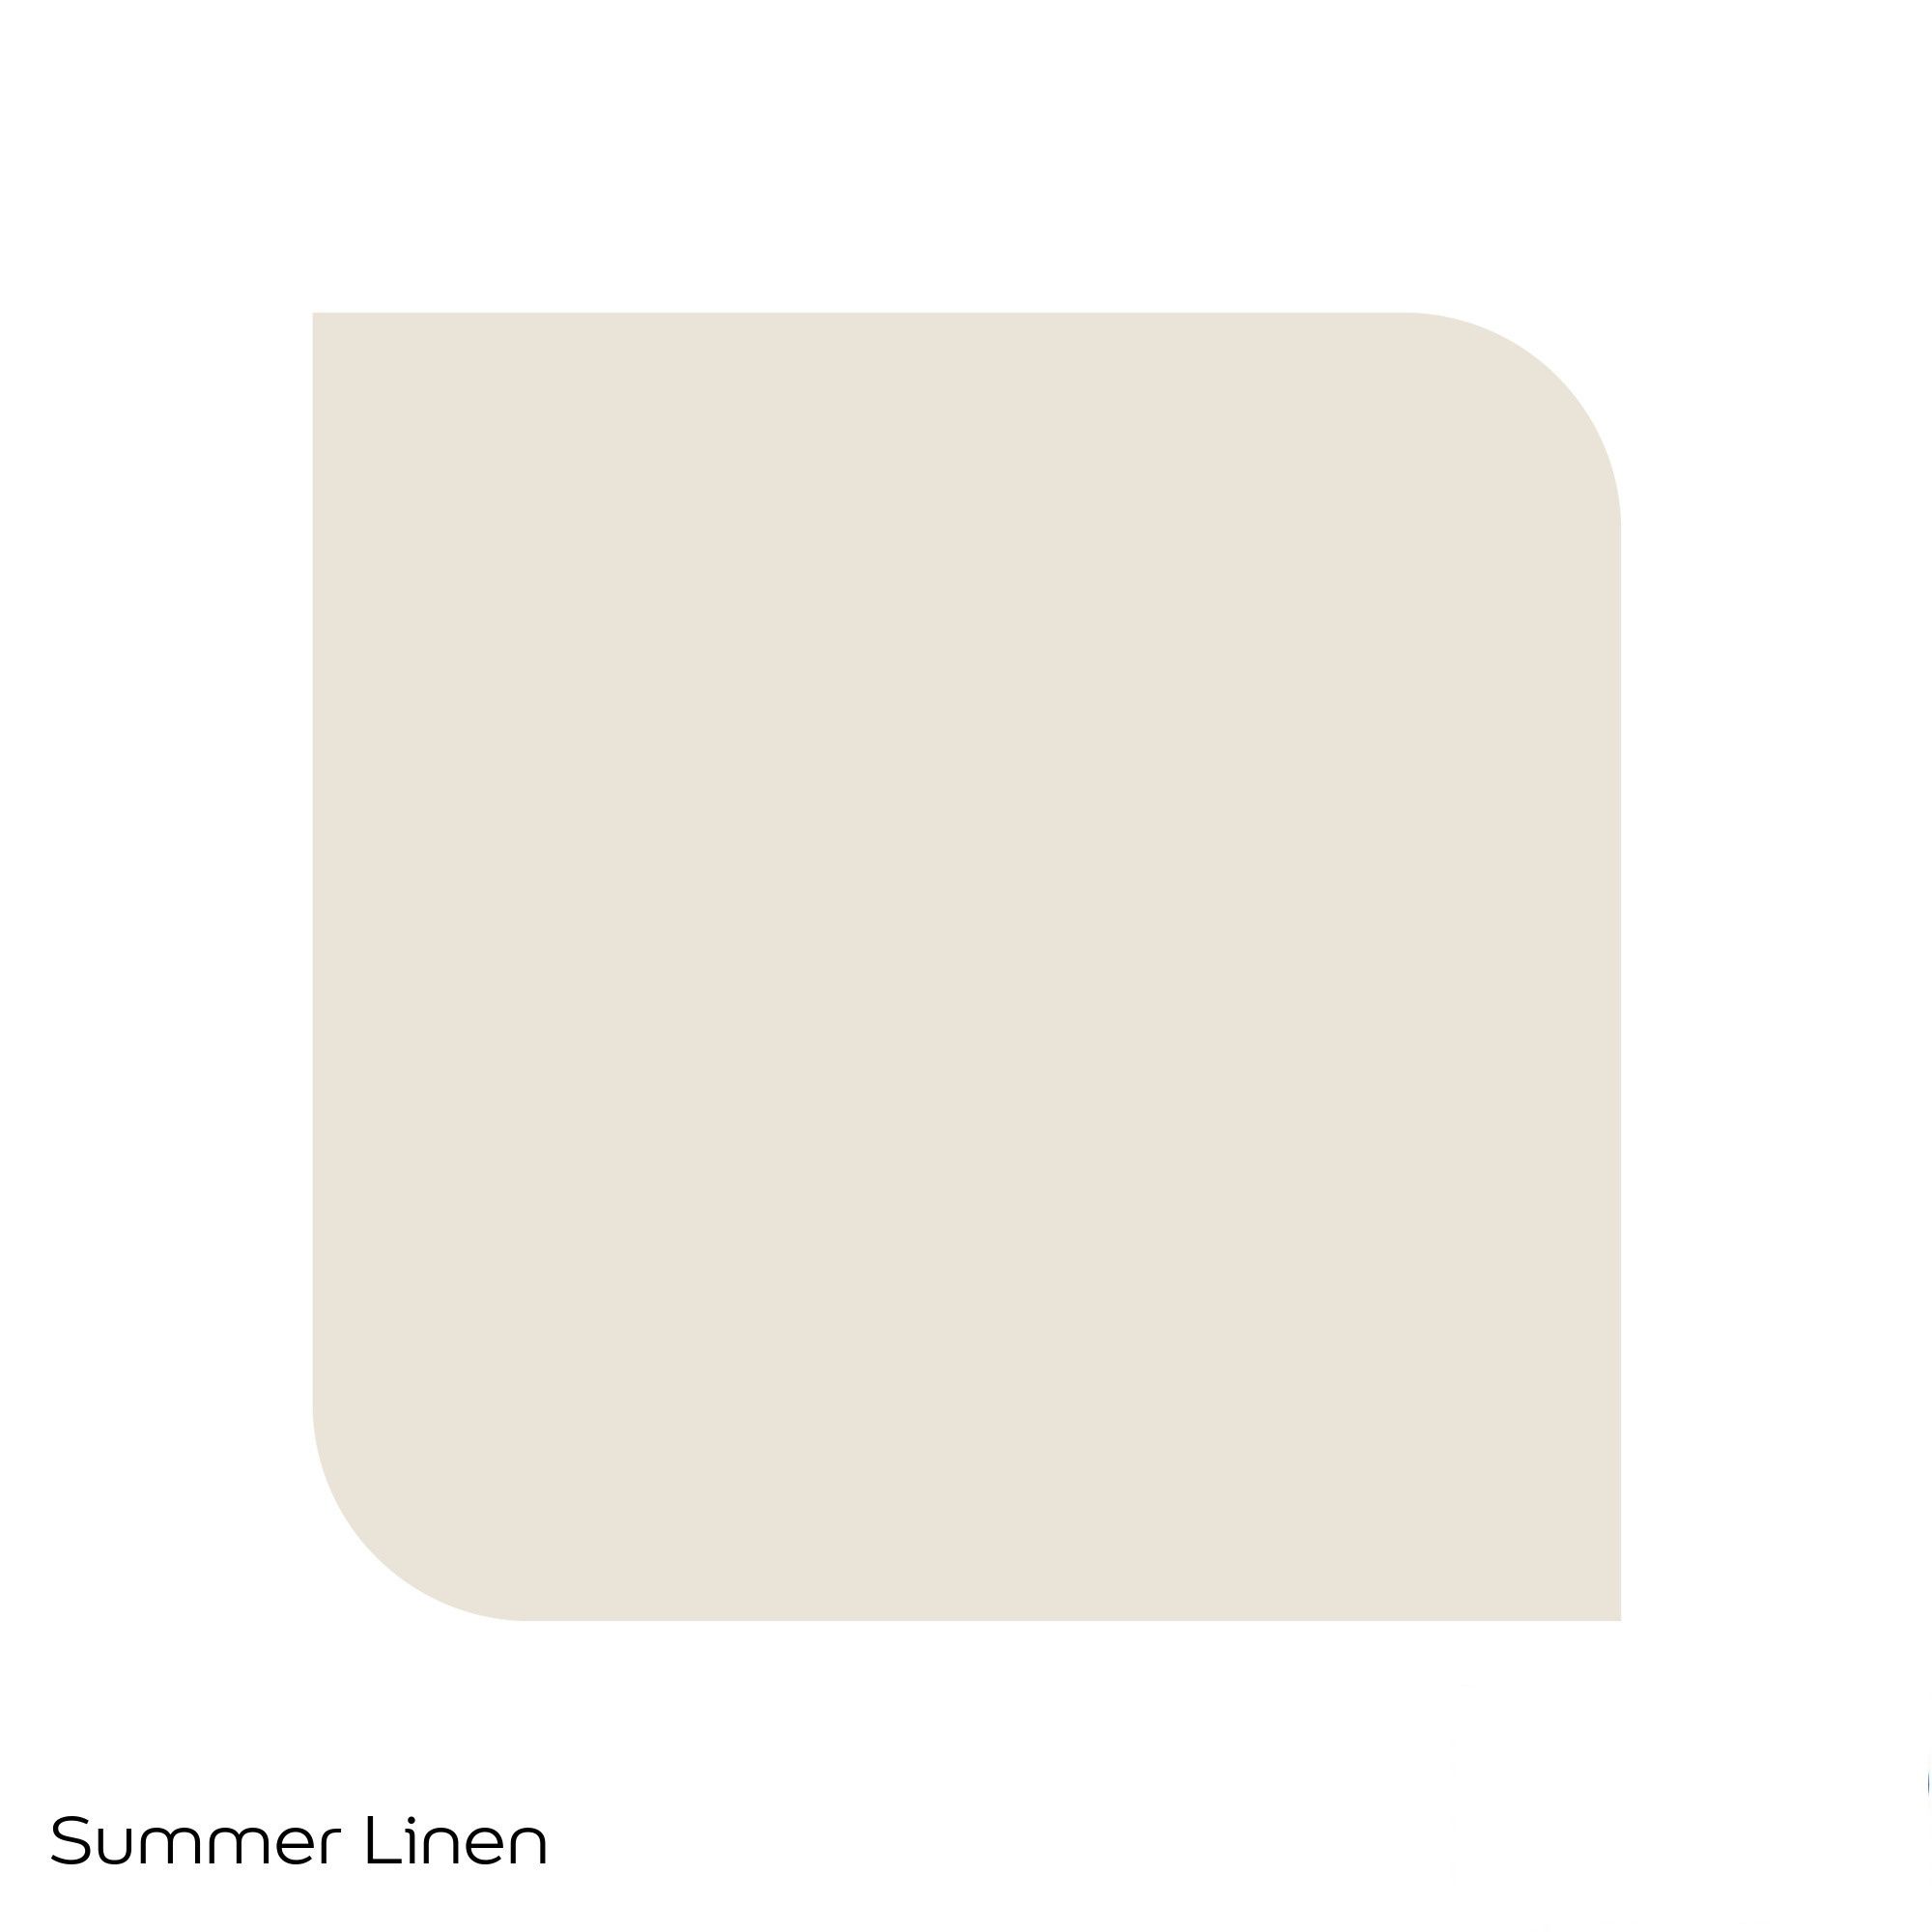 Dulux Standard Summer linen Matt Emulsion paint, 30ml Tester pot